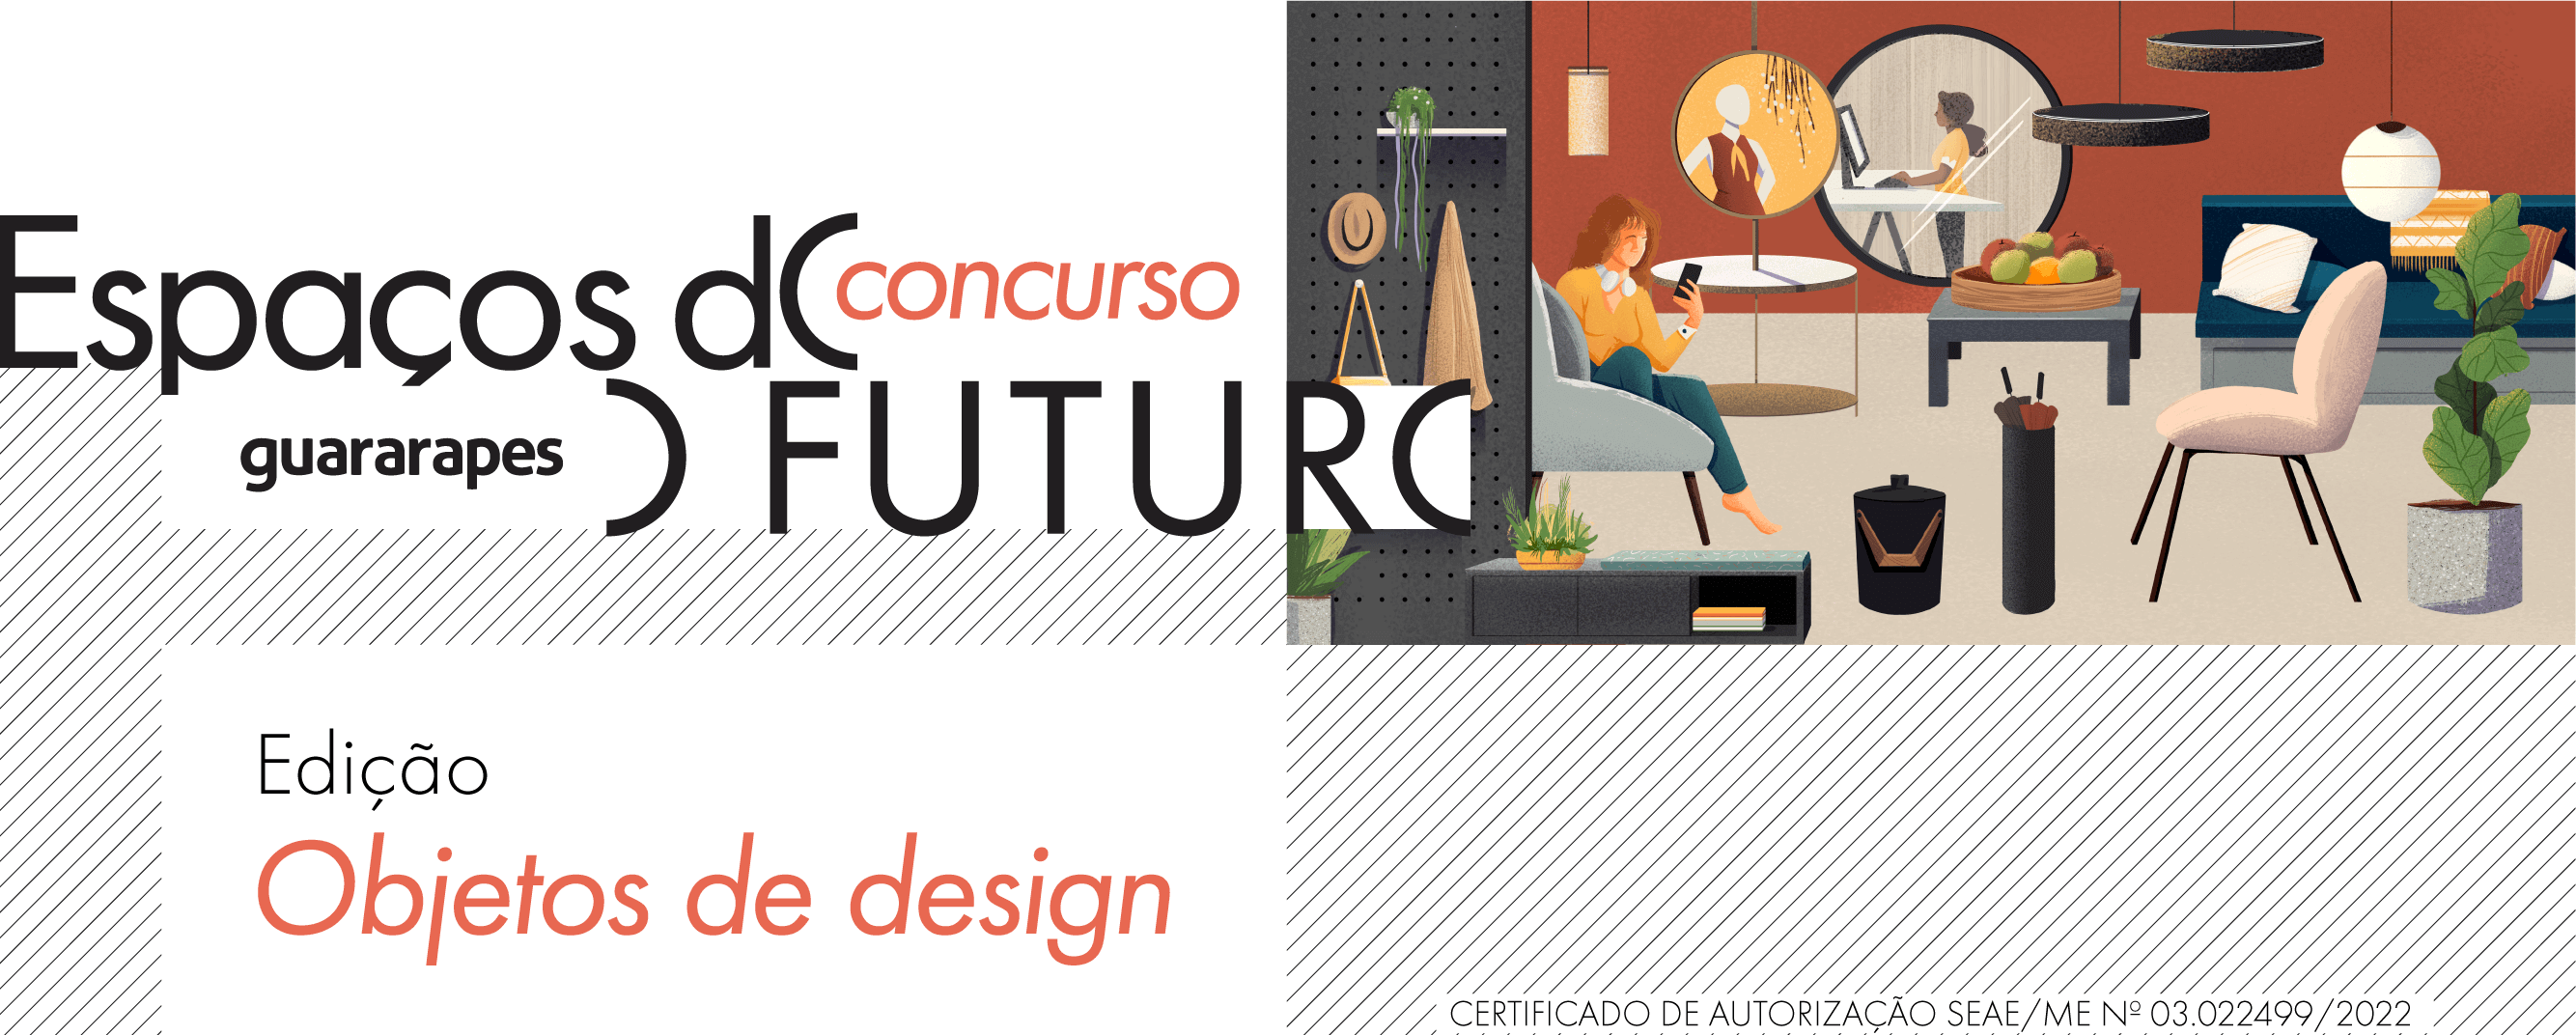 Espaços do Futuro - Guararapes - Objetos de Design 